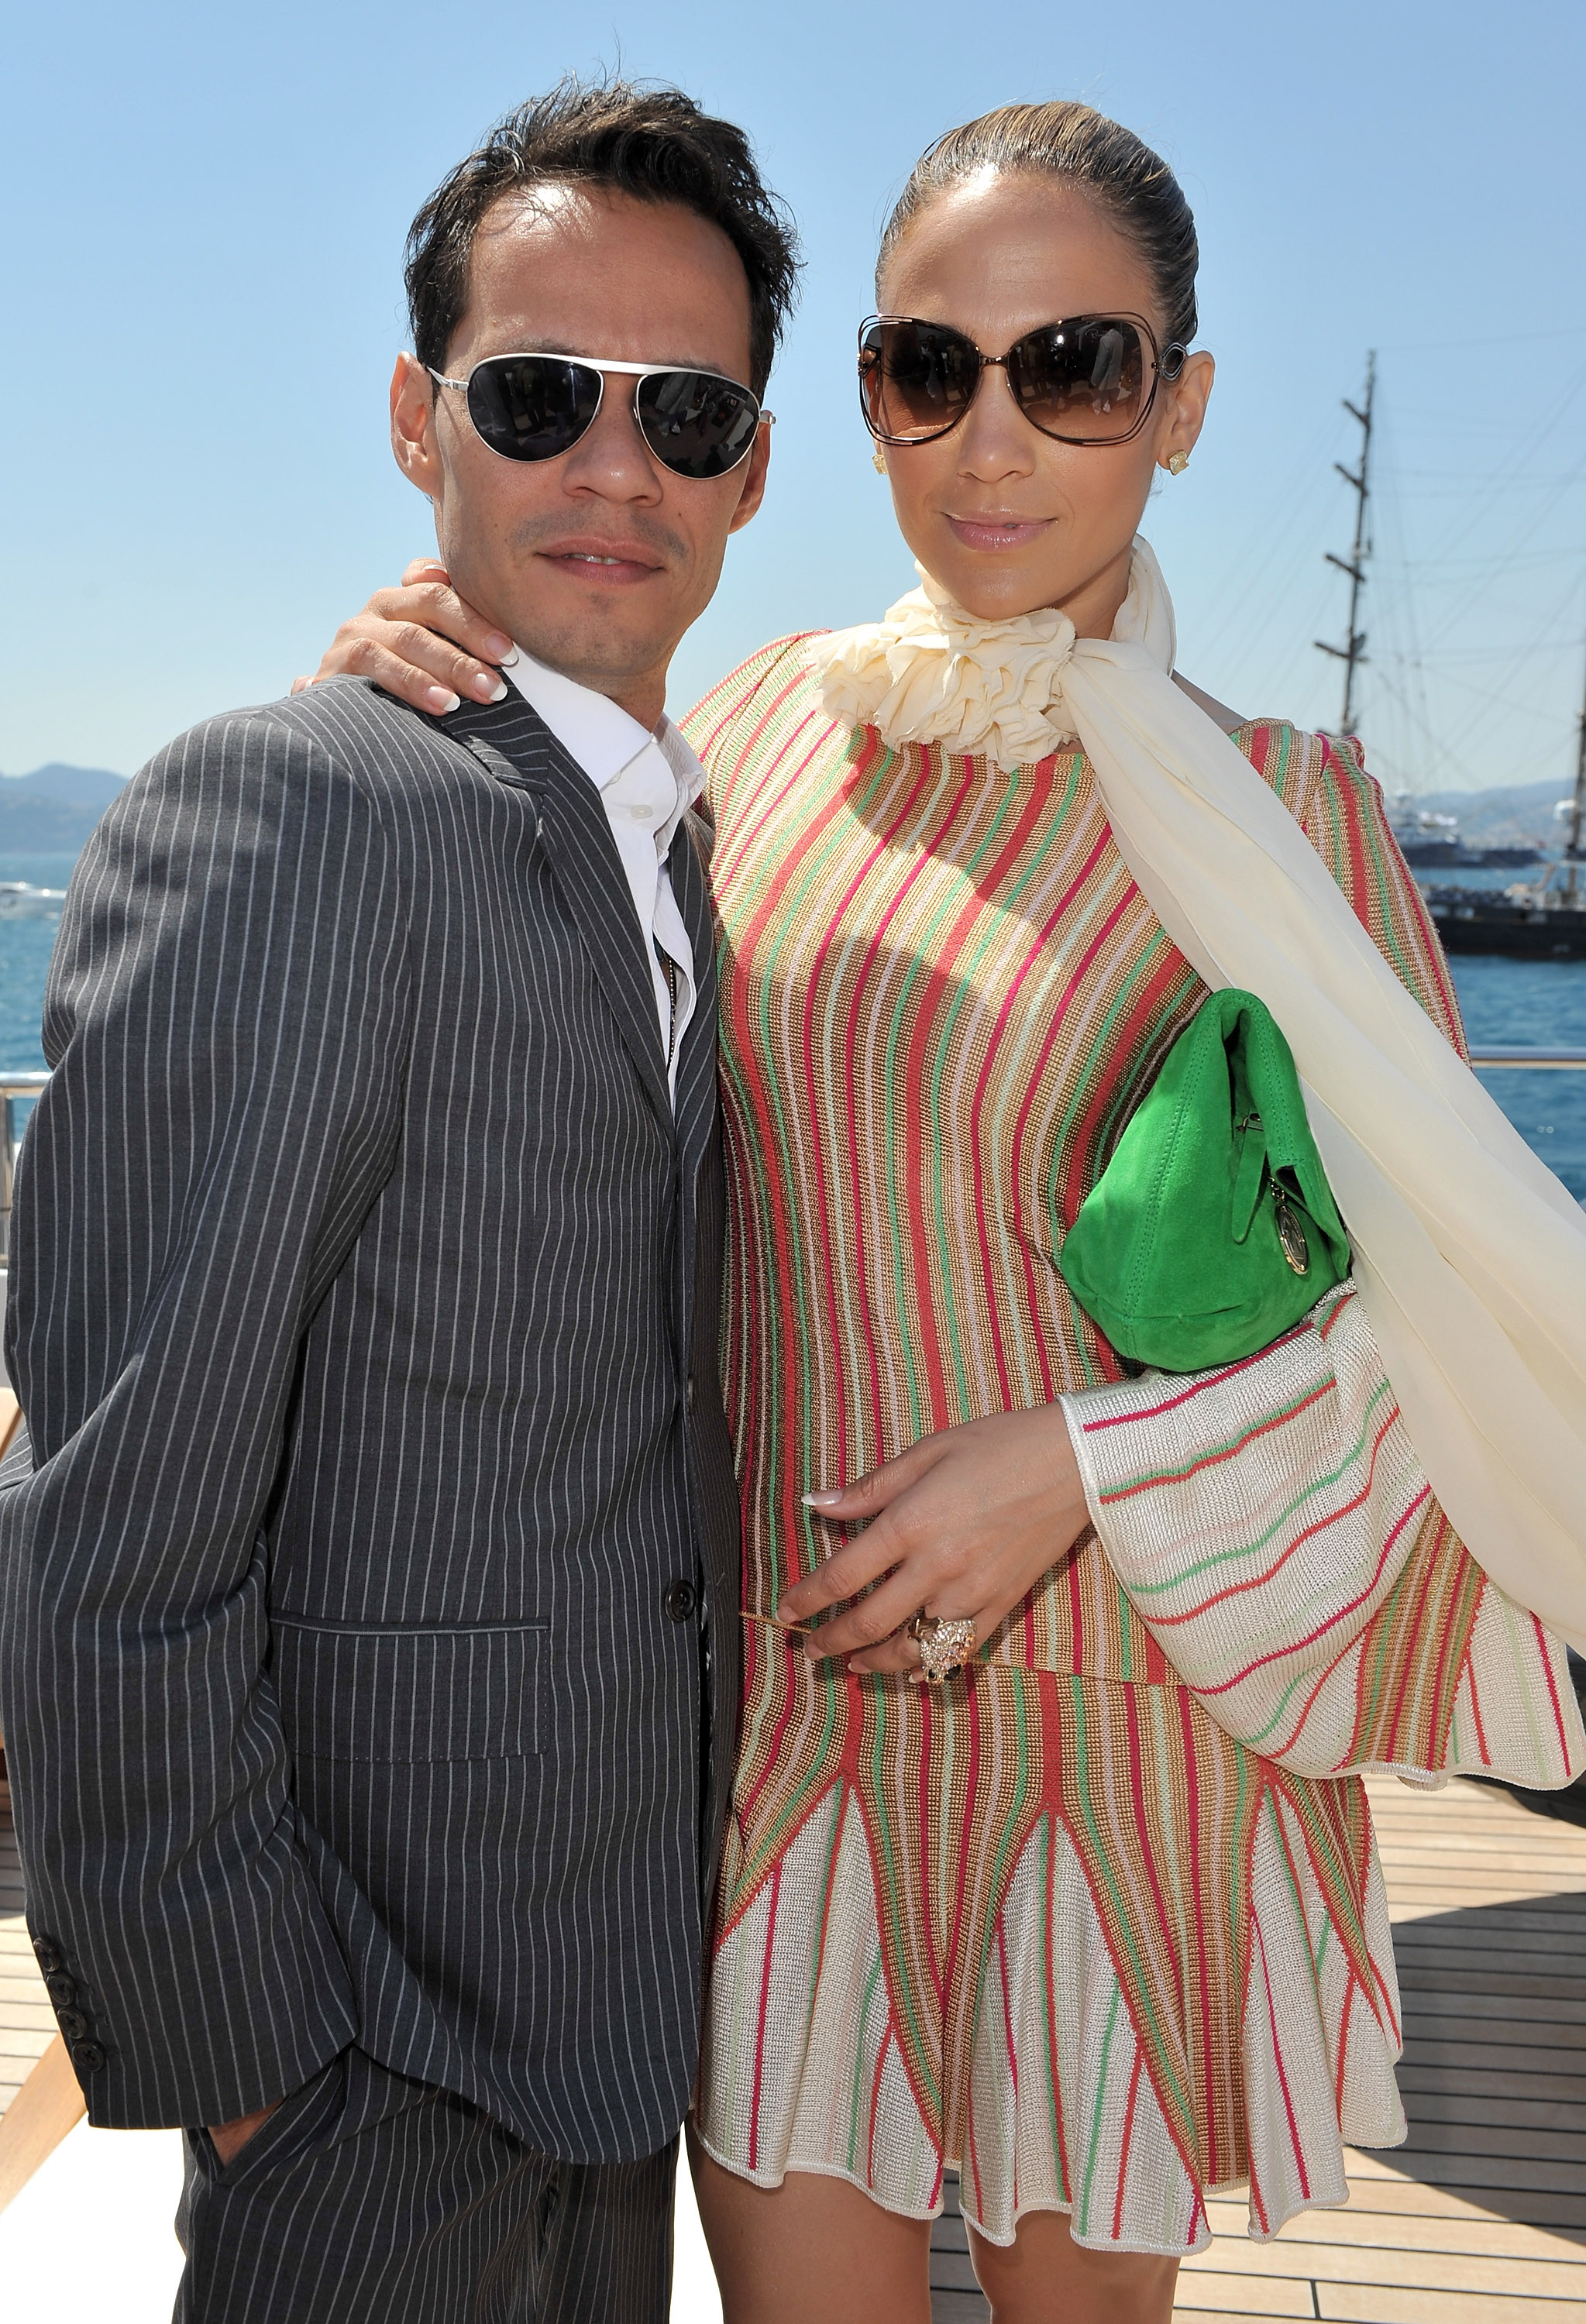 Marc Anthony e Jennifer Lopez